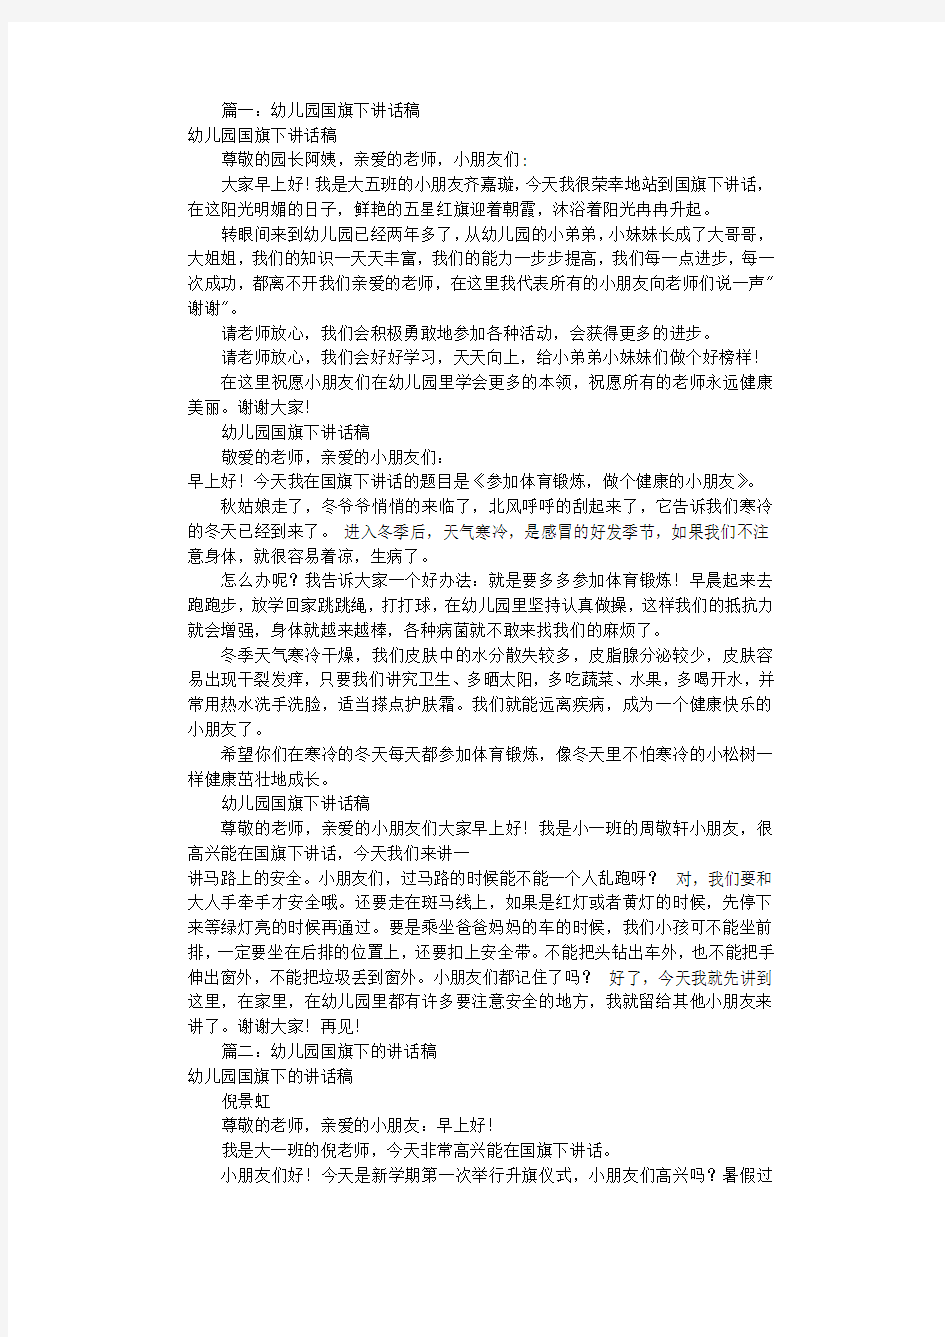 幼儿园国旗下讲话稿大全(共8篇).pdf